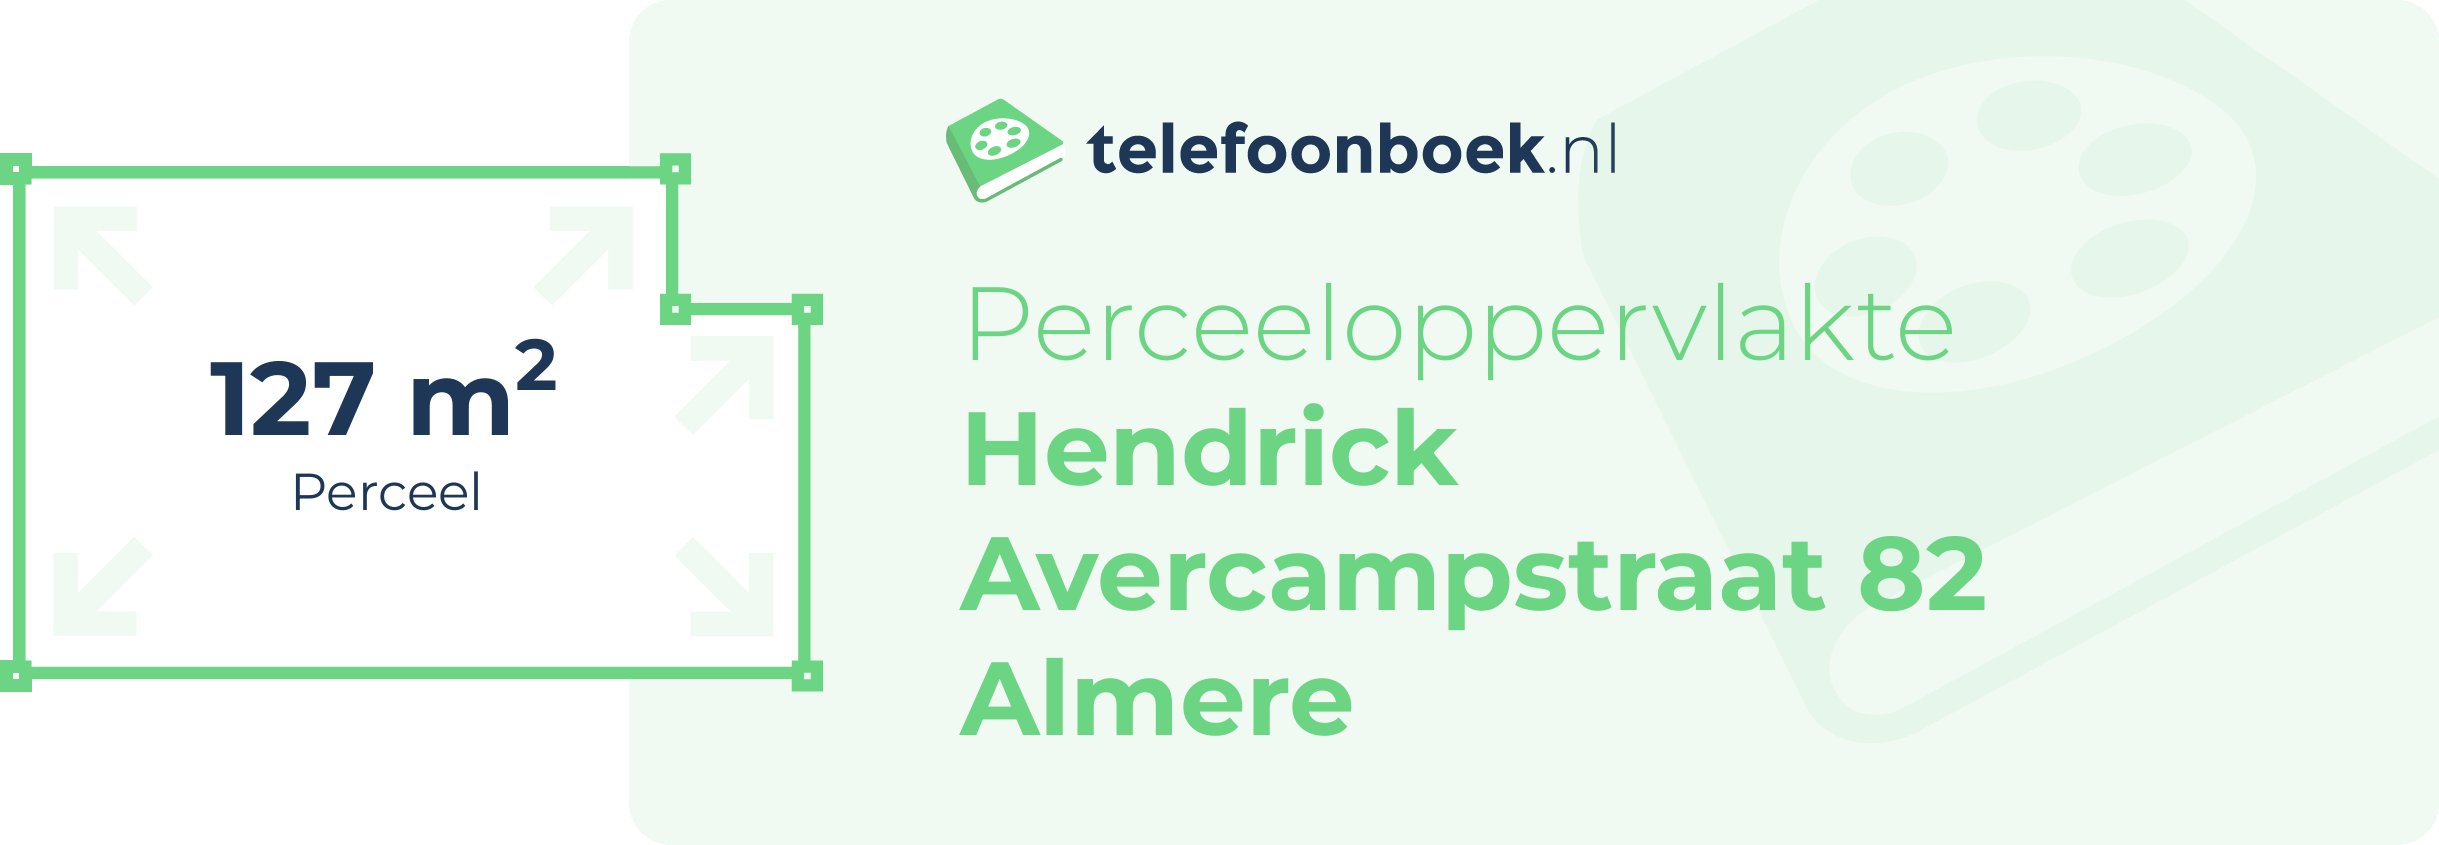 Perceeloppervlakte Hendrick Avercampstraat 82 Almere